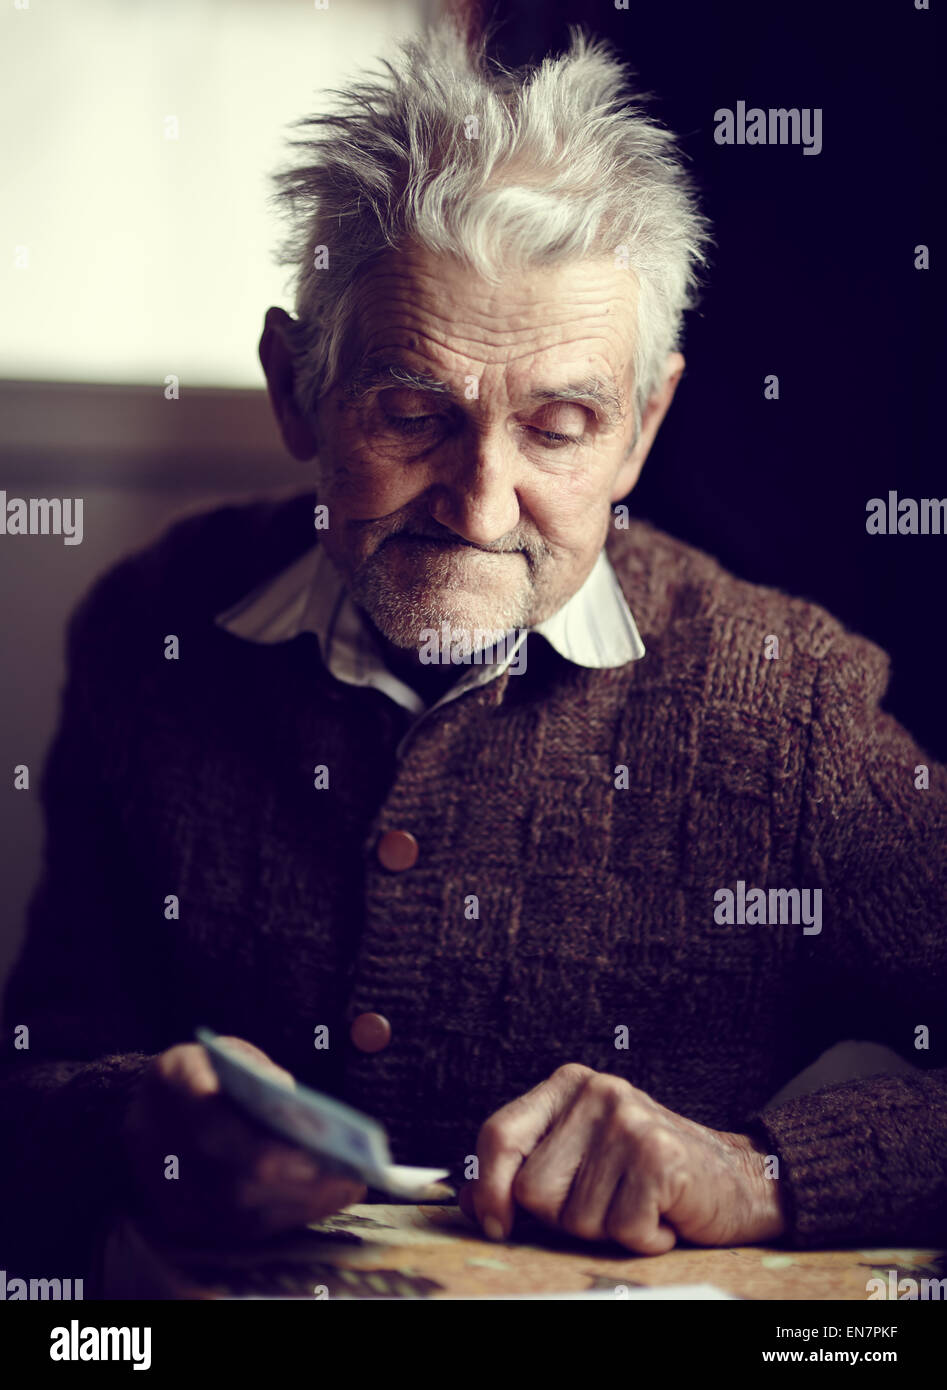 Il vecchio uomo nella sua 80s avendo appena ricevuto la sua piccola pensione, con un pensieroso espressione sul suo volto Foto Stock